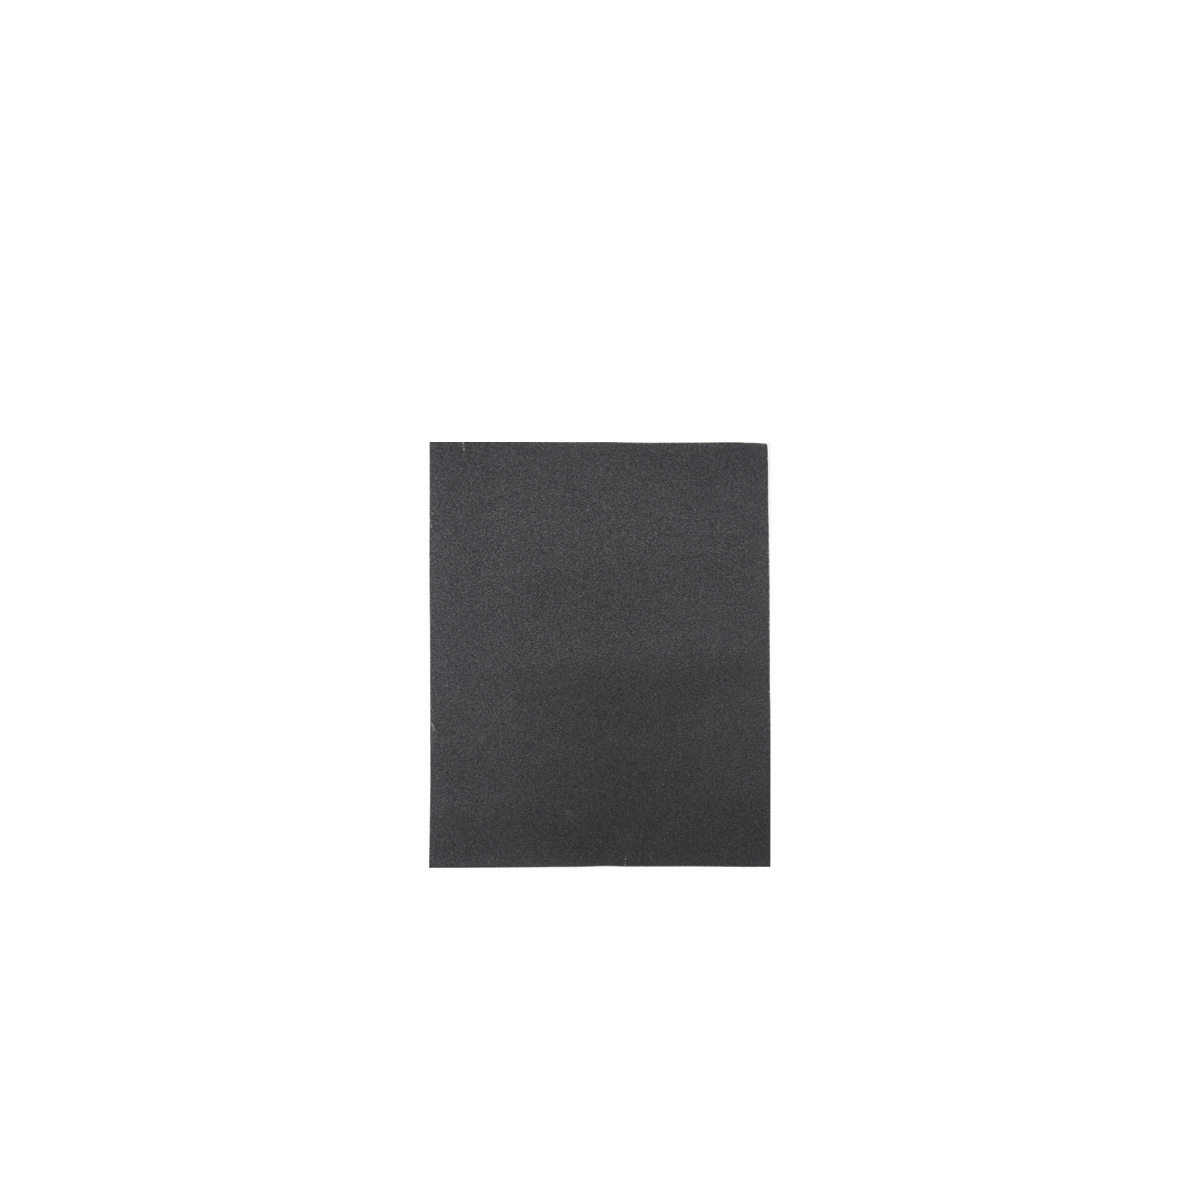 Лист шлифовальный Кедр, P 800, 230 x 280 мм, водостойкий,  бумага, 10 шт водостойкий шлифовальный лист ремоколор